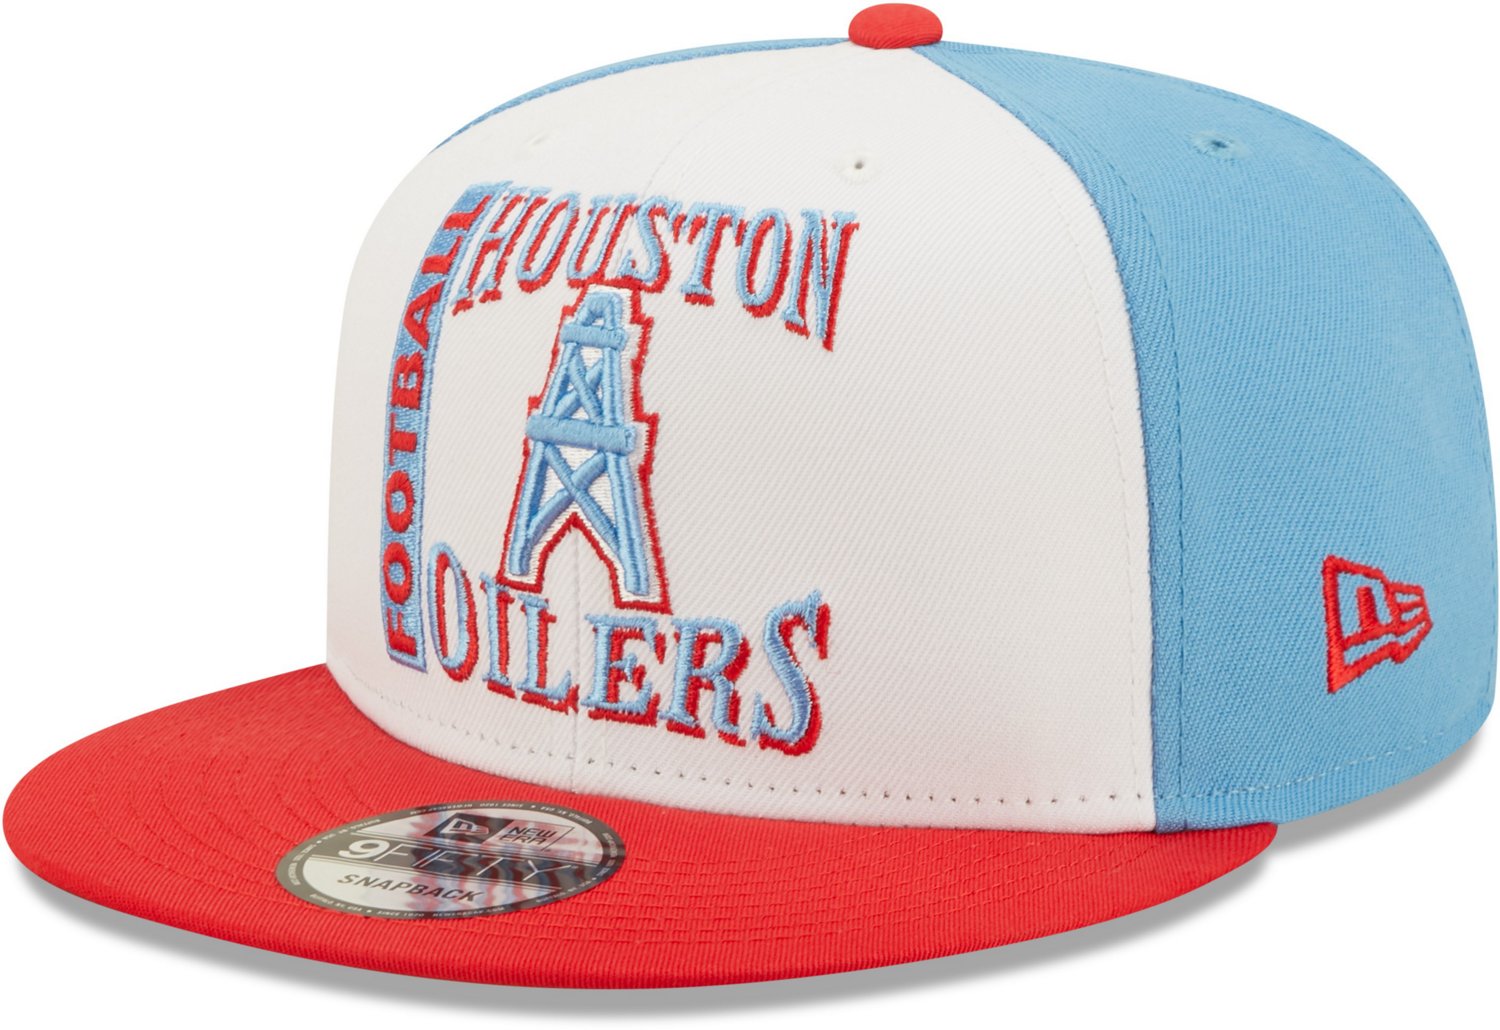 Houston Oilers NFL New Era Vintage Snapback Team Hat